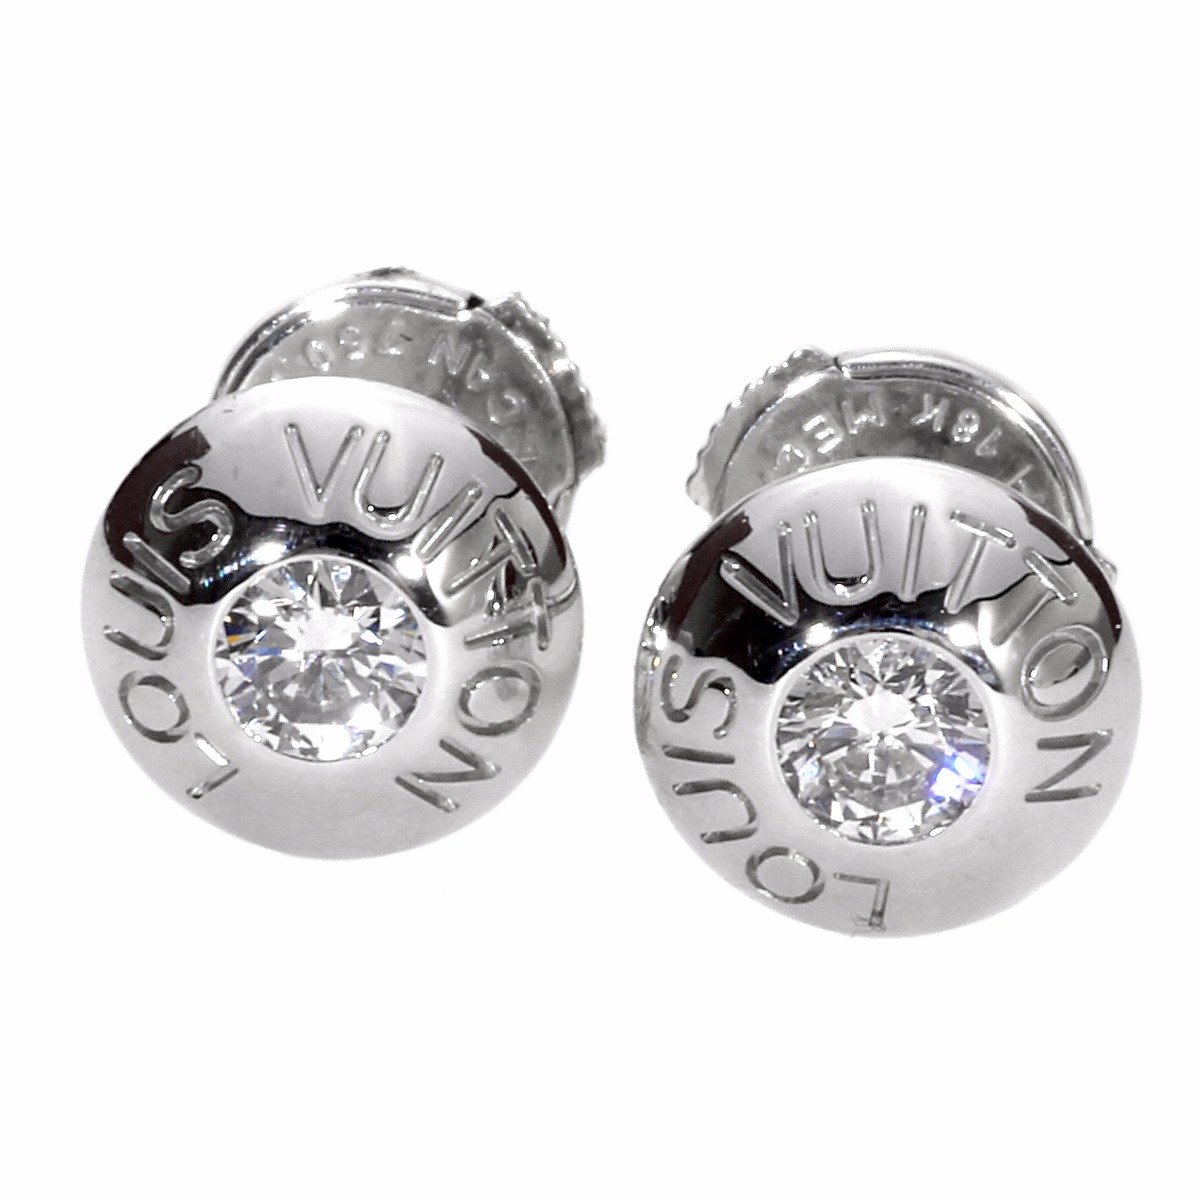 Mismatched Louis Vuitton Monogram Fusion diamond earrings